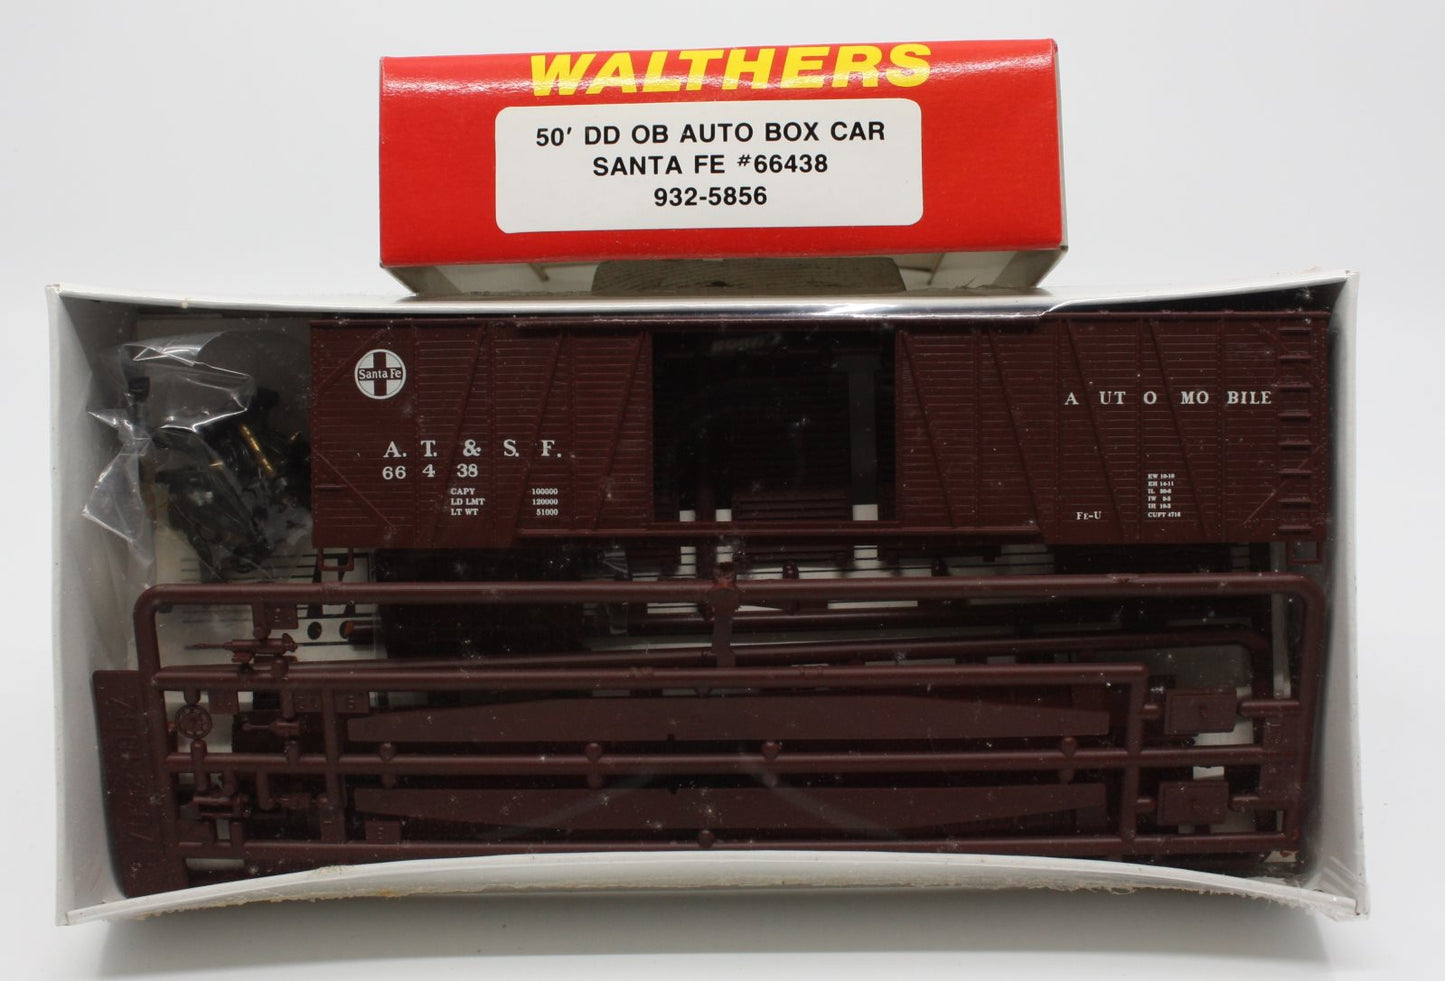 Walthers 932-5856 HO 50' DD OB Auto Box Car Santa Fe #66438